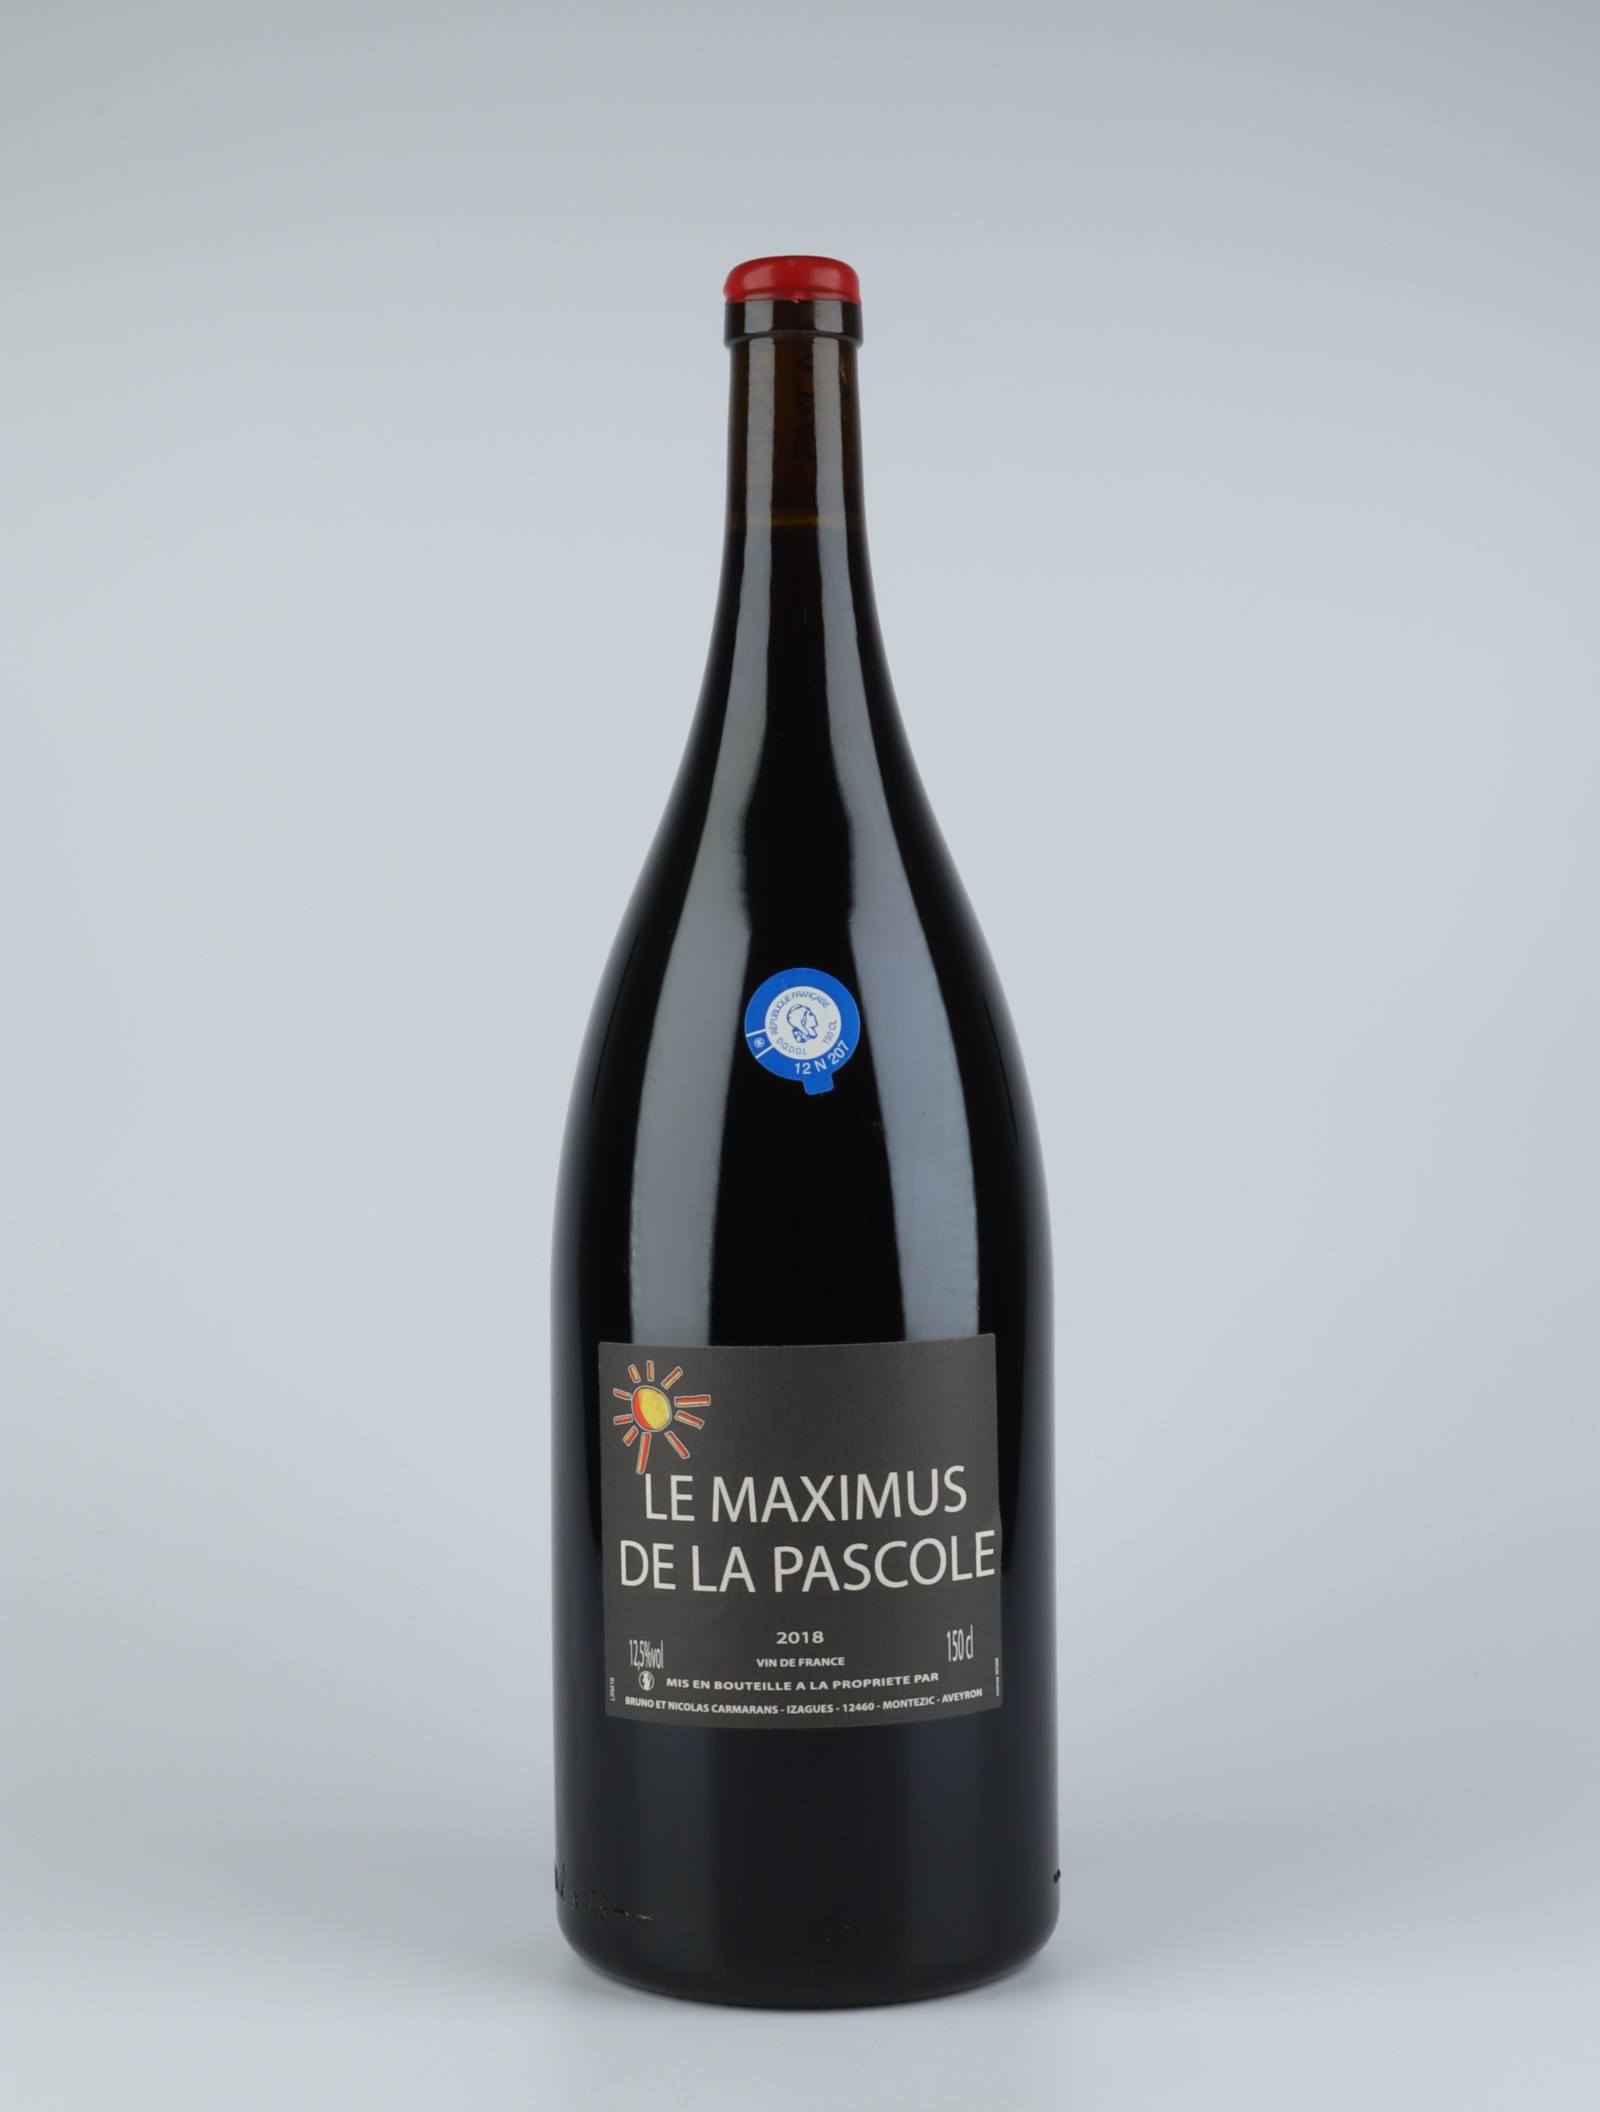 En flaske 2018 Maximus de la Pascole Rødvin fra Bruno Duchêne, Rousillon i Frankrig